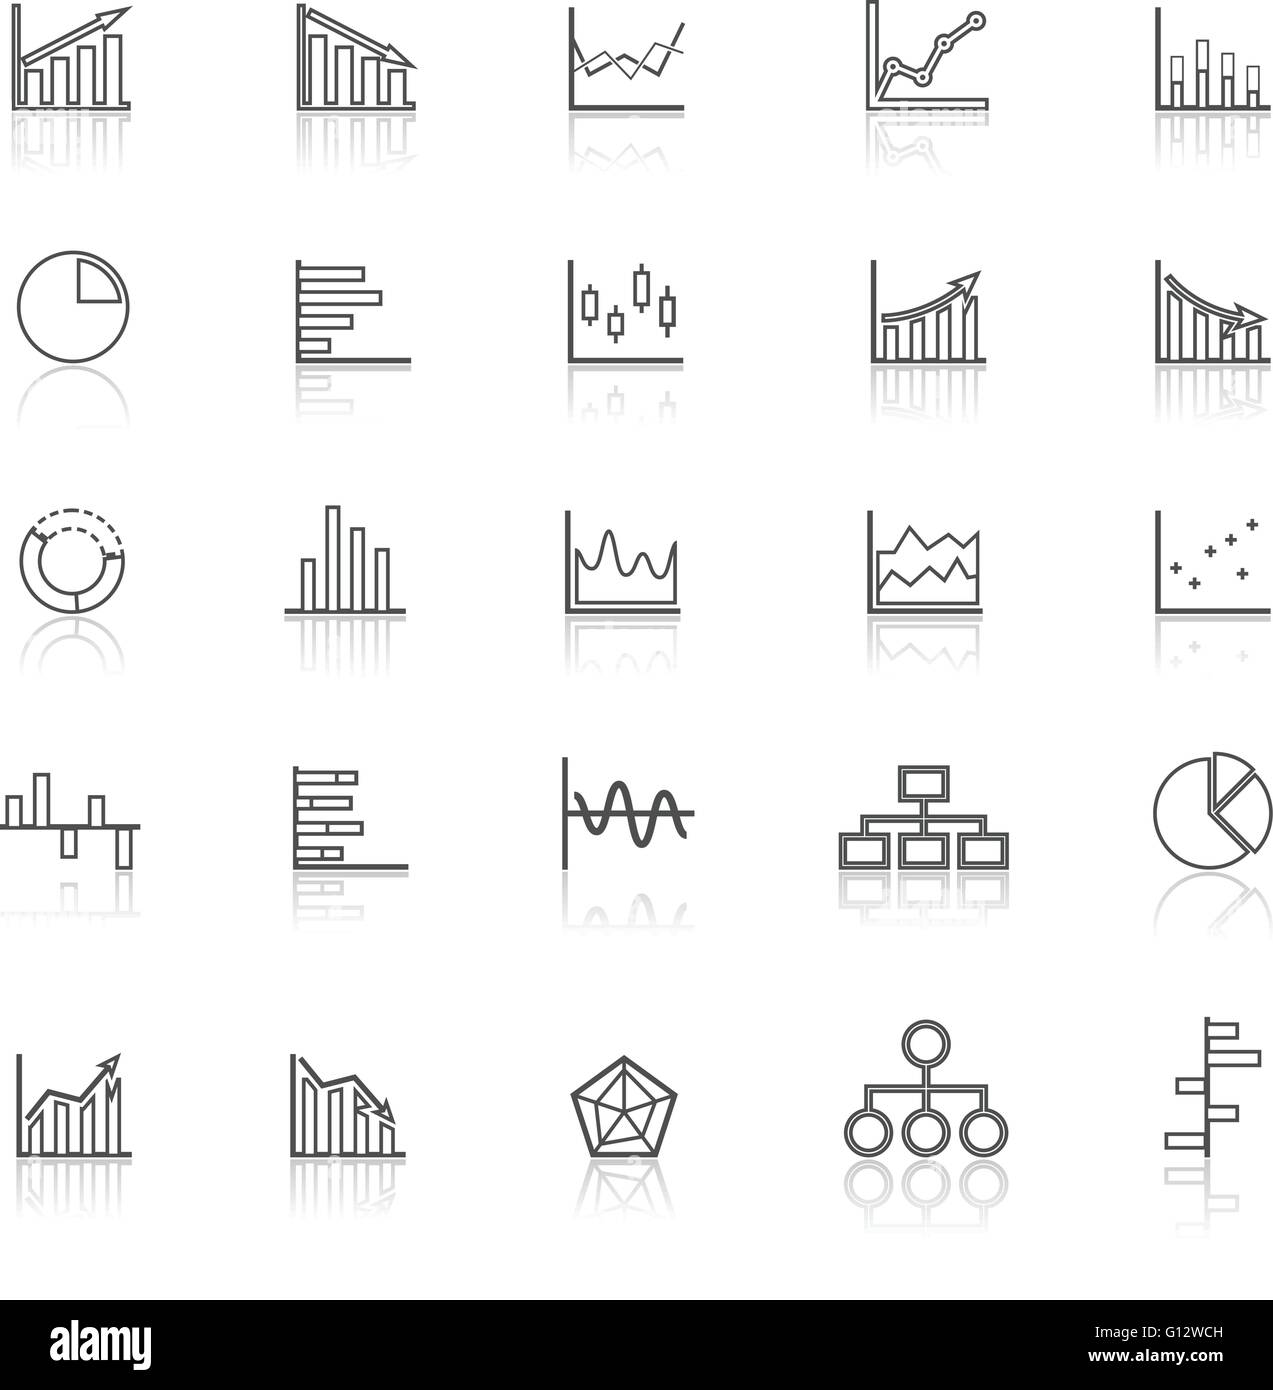 La linea del grafico le icone con il riflettere su sfondo bianco, vettore di stock Illustrazione Vettoriale